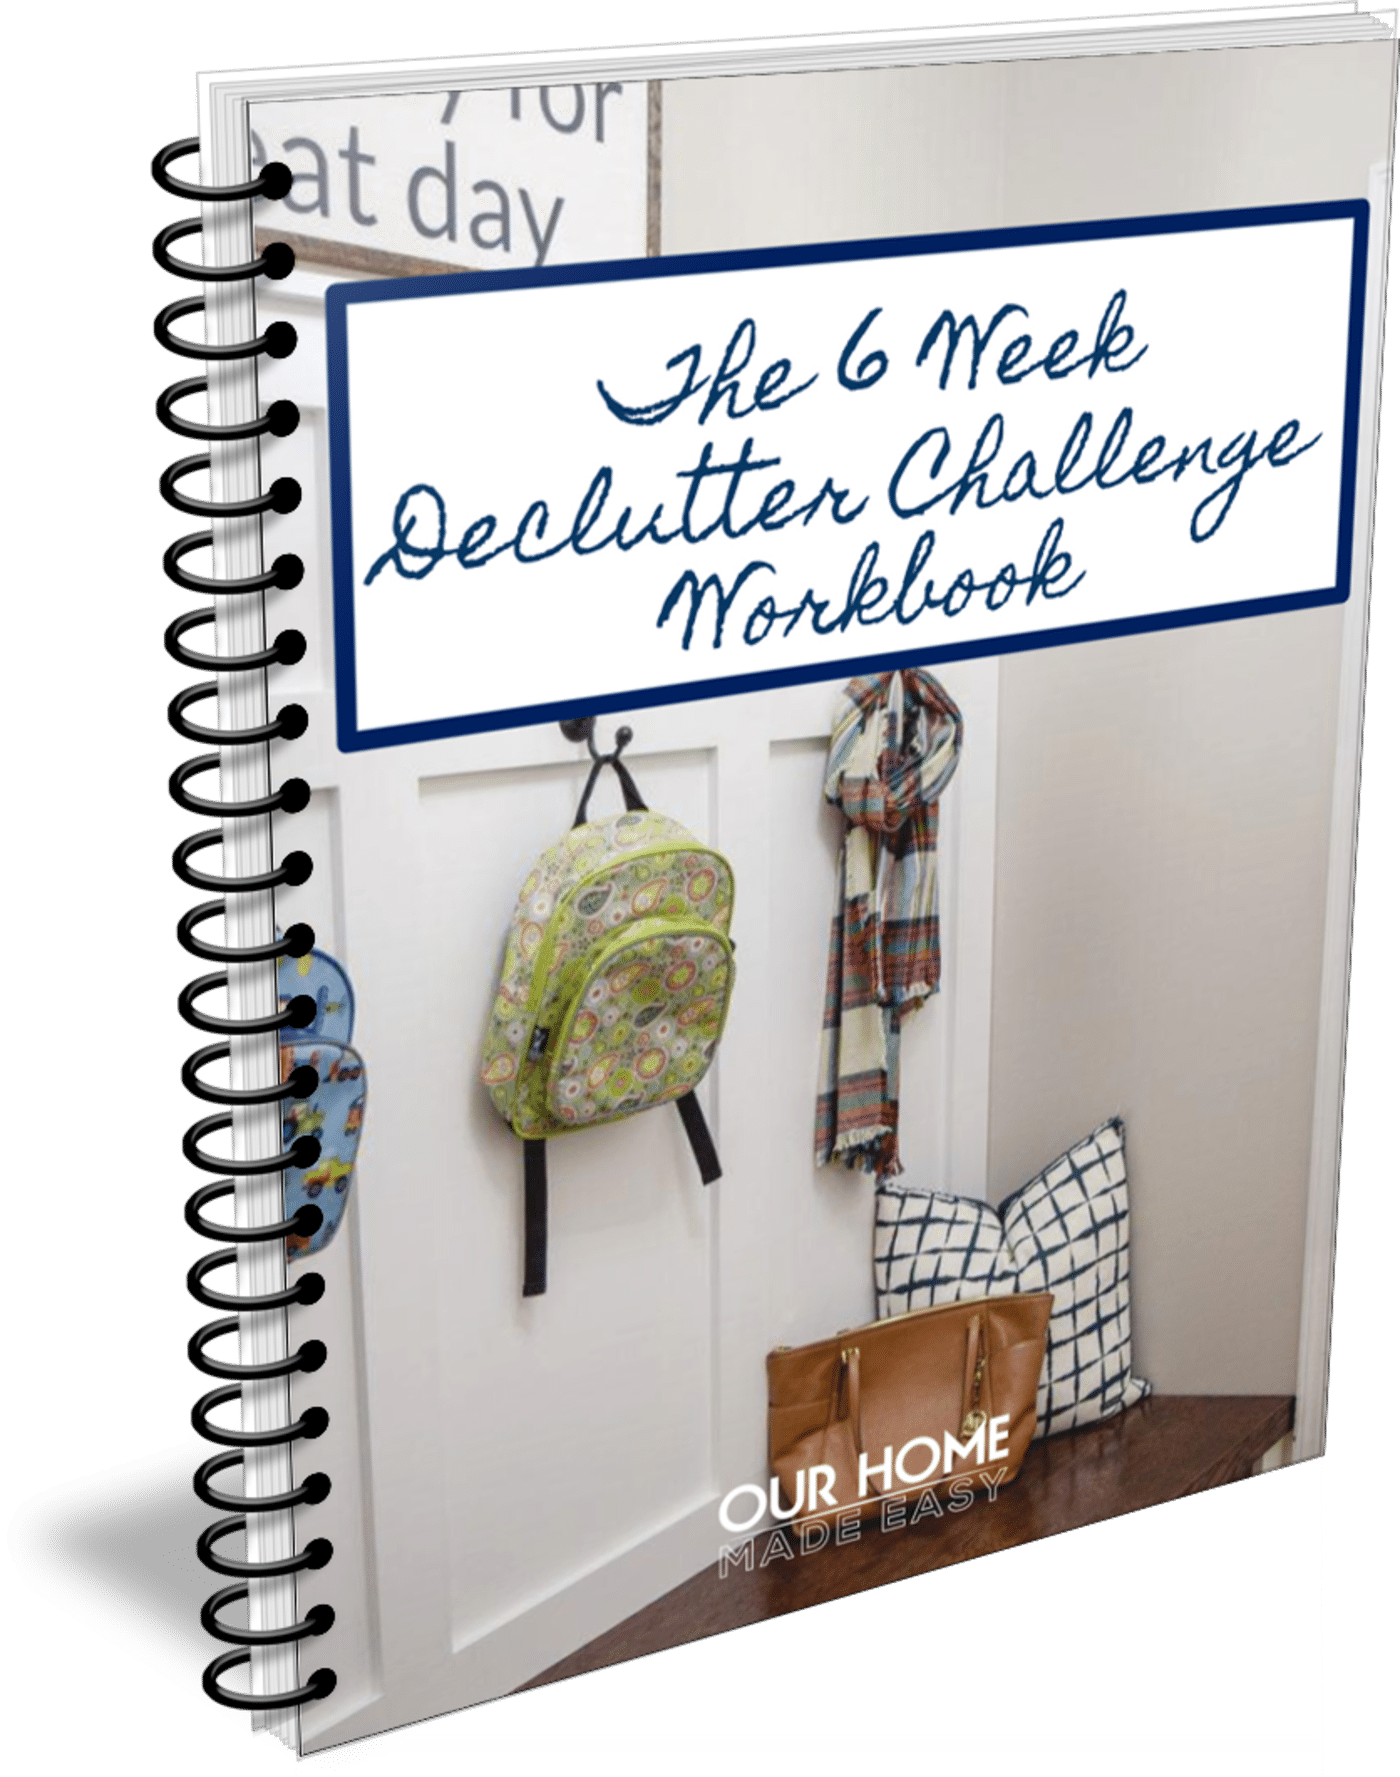 declutter challenge workbook binder